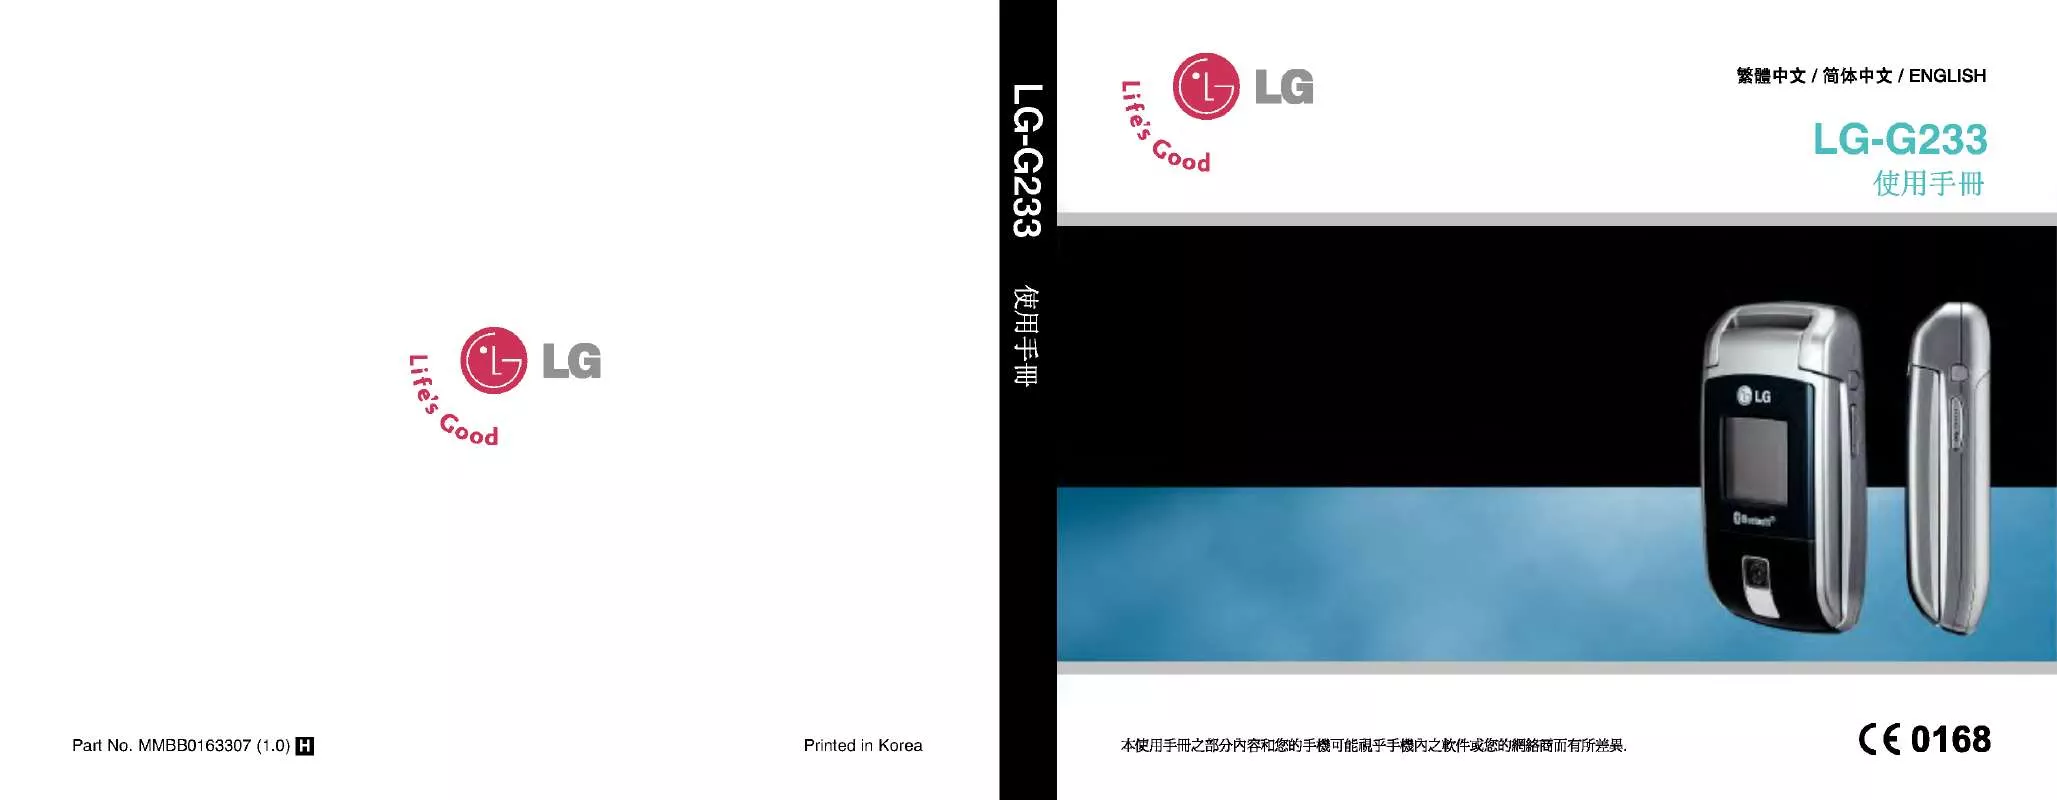 Mode d'emploi LG LG-G233